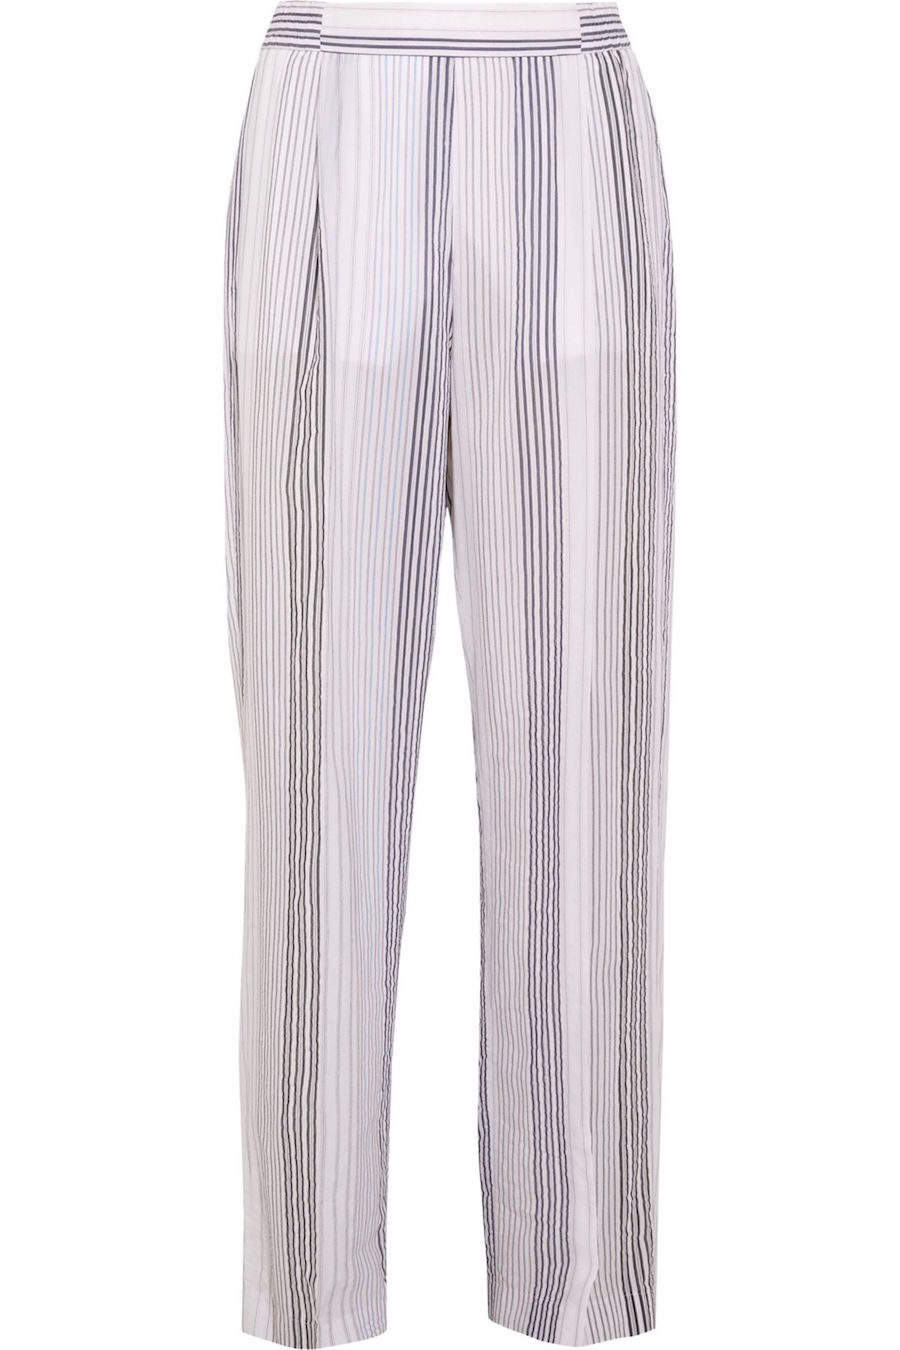 STELLA MCCARTNEY Striped cotton blend wide leg pants